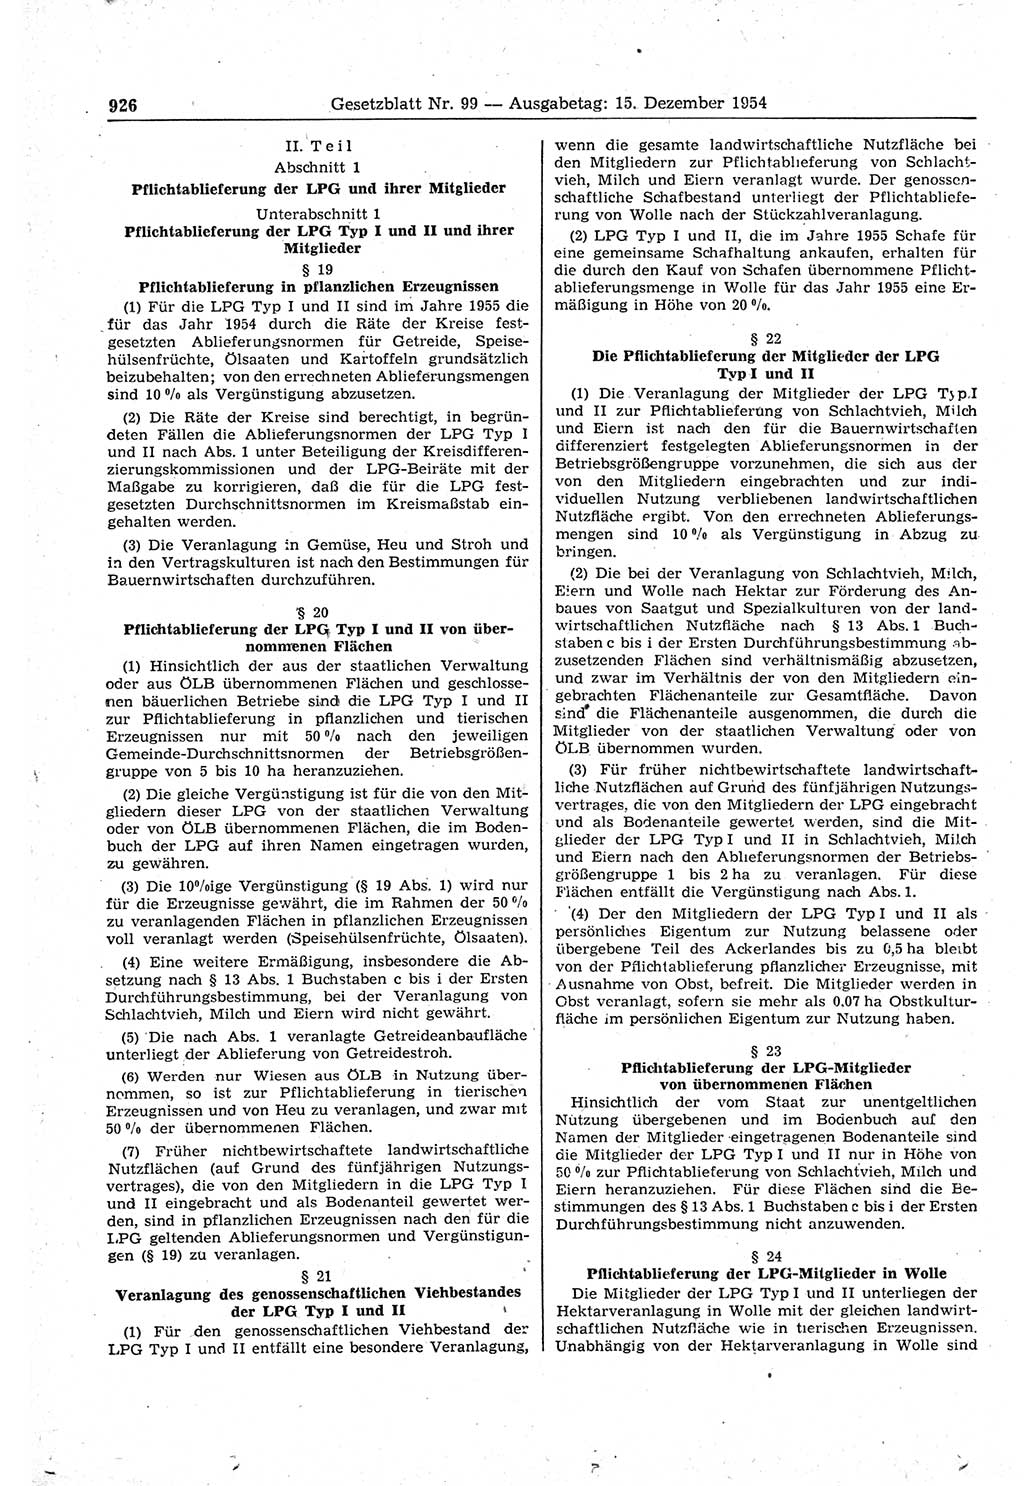 Gesetzblatt (GBl.) der Deutschen Demokratischen Republik (DDR) 1954, Seite 926 (GBl. DDR 1954, S. 926)